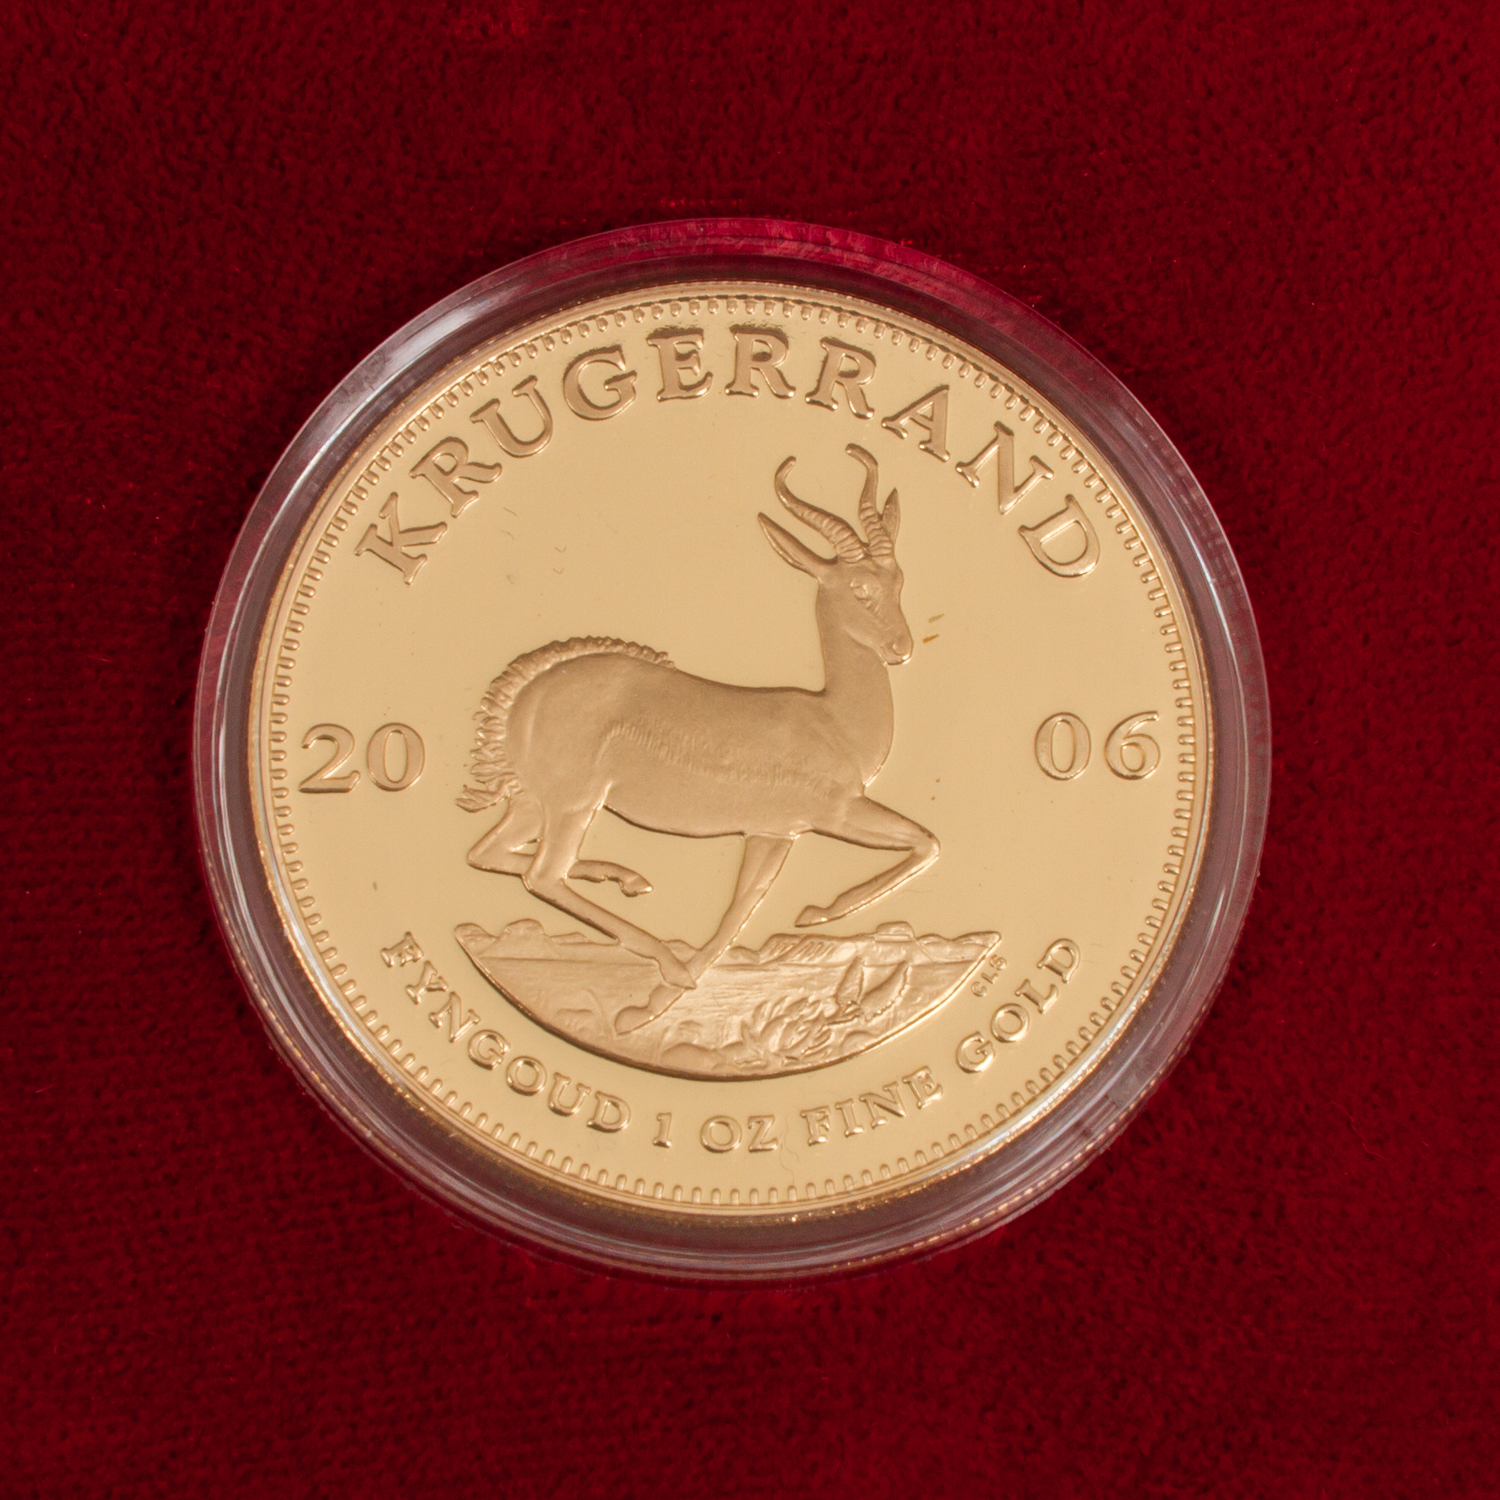 Südafrika/GOLD - 1 Unze GOLD fein, 1 Krügerrand 2006, SPIEGELGLANZ, Limited Edition, in Etui, - Bild 2 aus 3